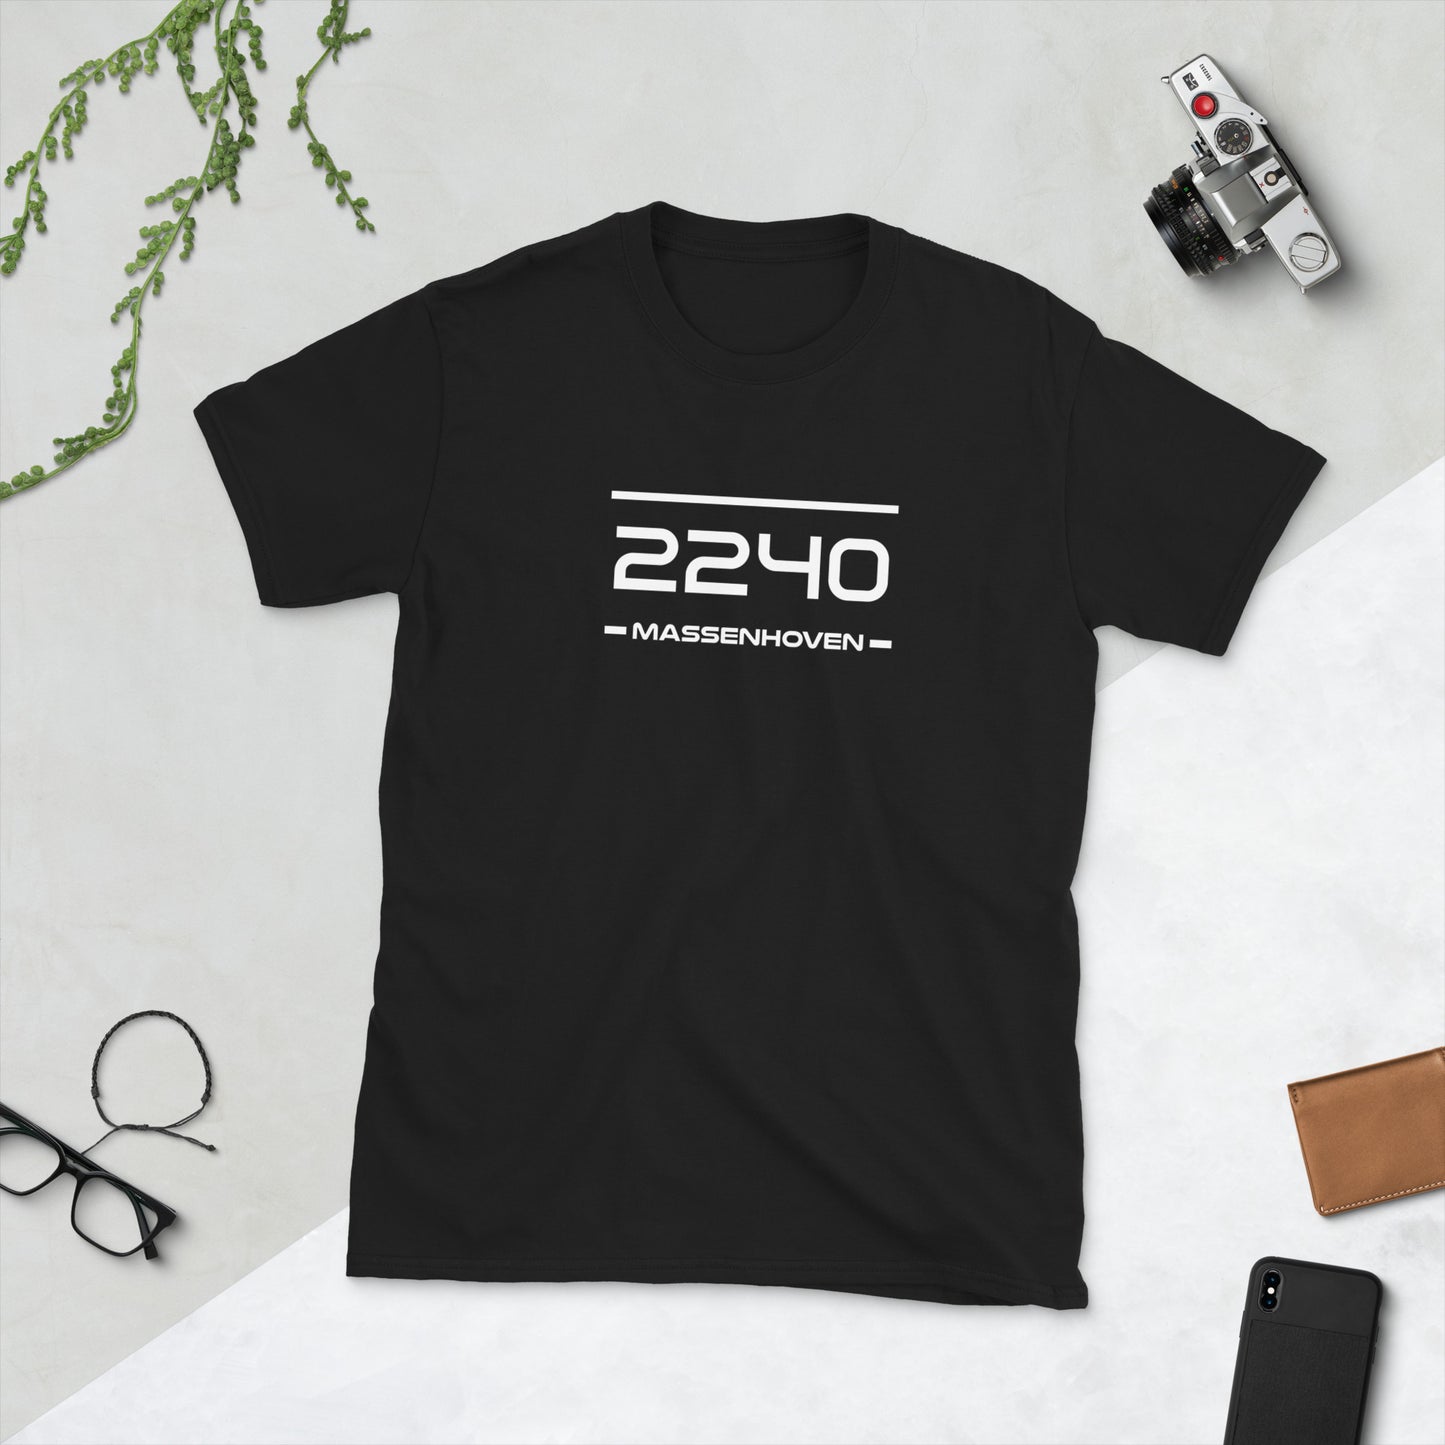 Tshirt - 2240 - Massenhoven